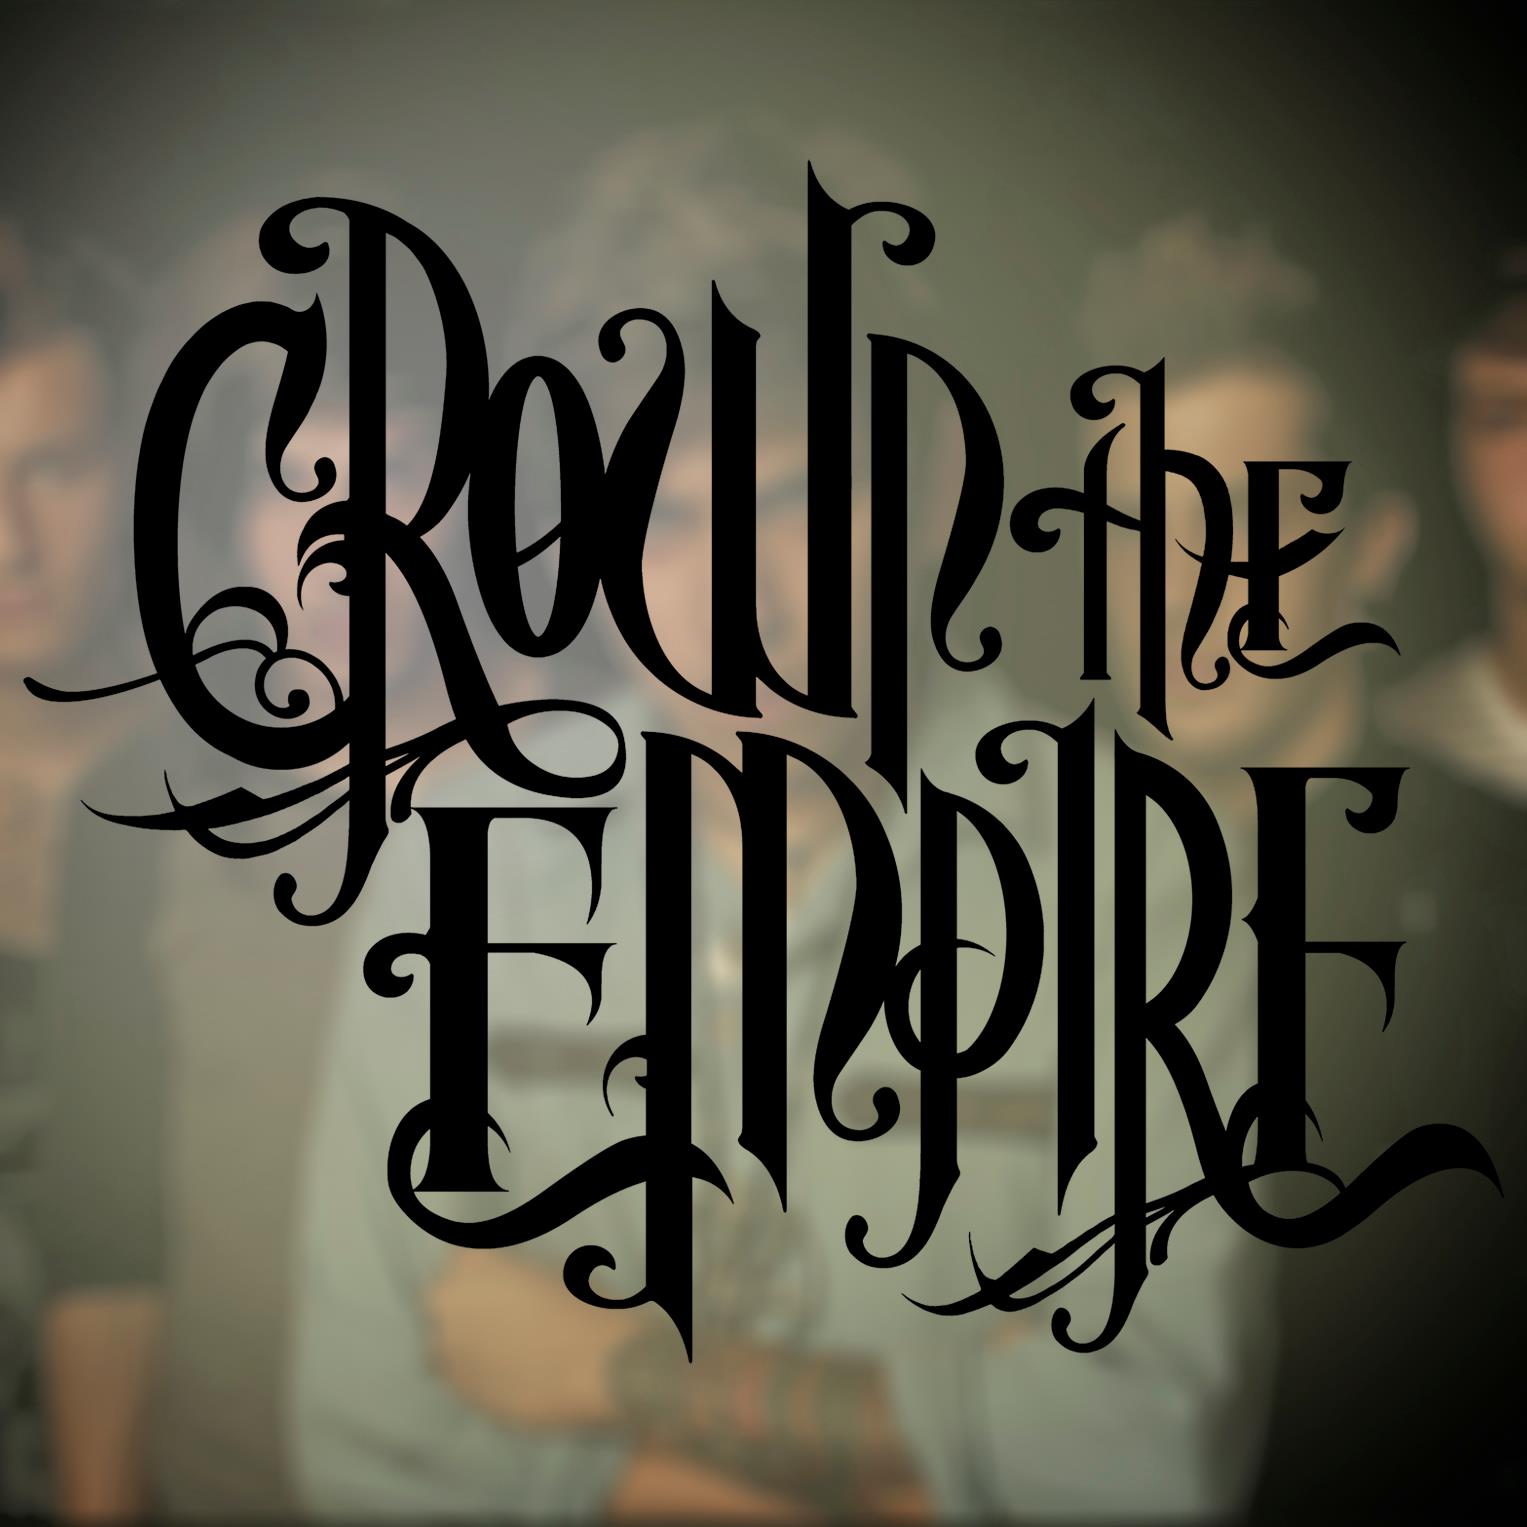 Crown The Empire Logo Forum Dafont Com